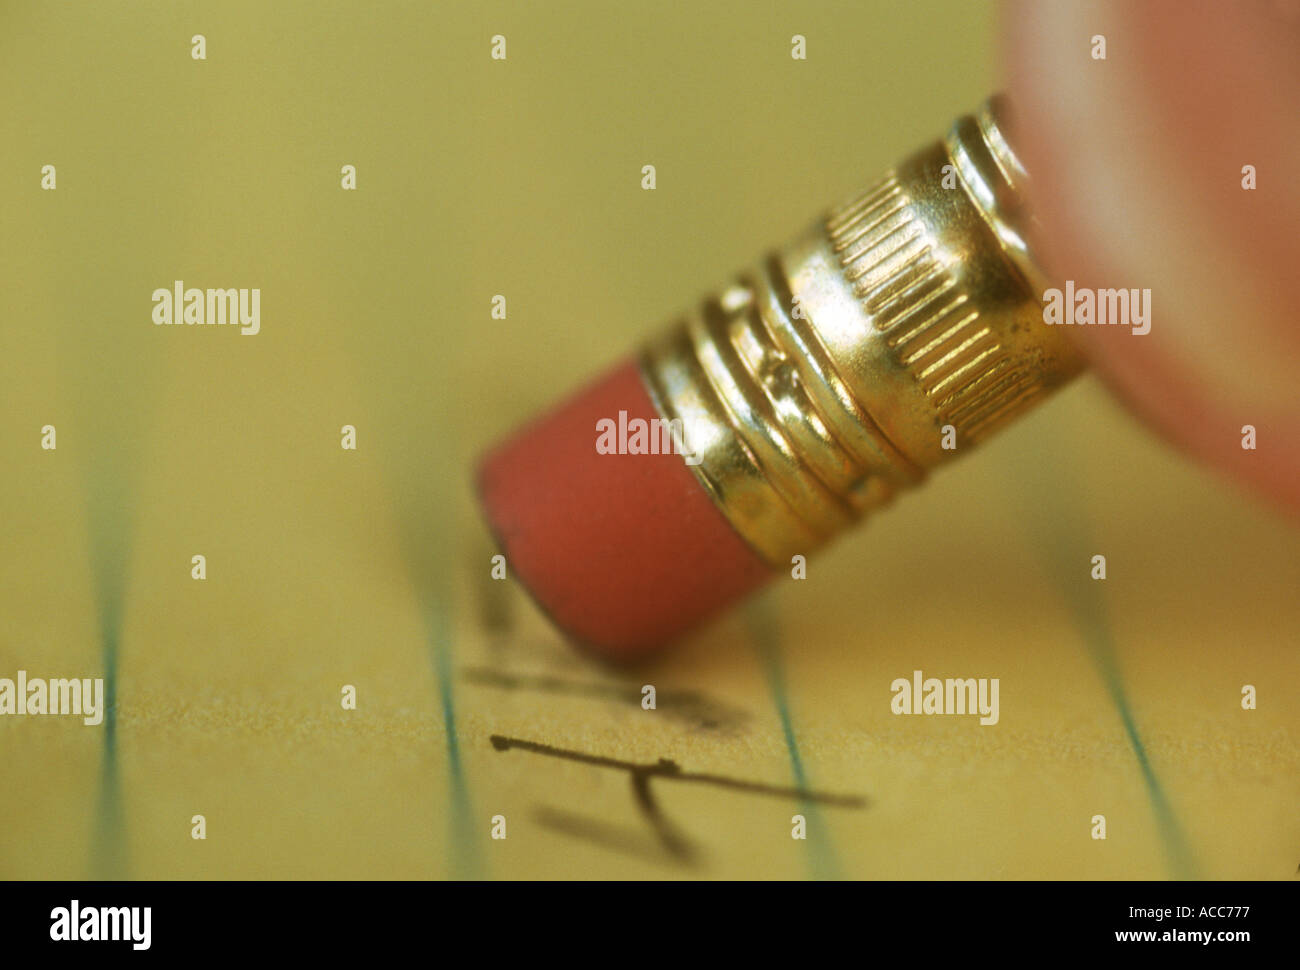 Detailansicht der Finger mit einem Bleistift auf einem Notizblock löschen Stockfoto